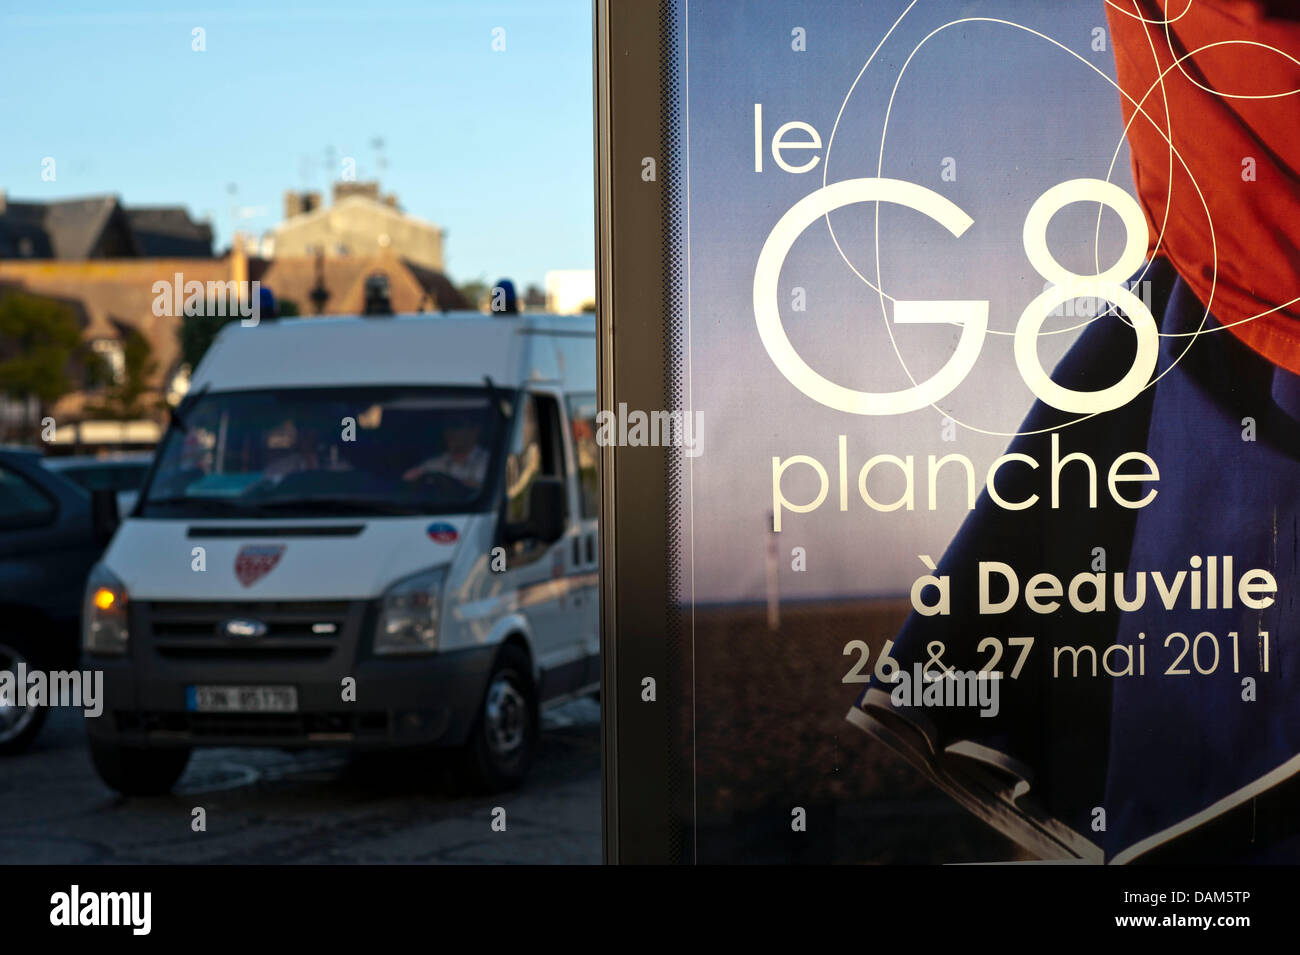 Ein Polizeifahrzeug fährt am Dienstagabend (24.05.2011) a Deauville, Frankreich, einem G8-Plakat vorbei. In dem französischen Ort am Ärmelkanal findet am 26. und 27. Mai 2011 der diesjährige G8-Gipfel statt. Foto: Peer Grimm dpa Foto Stock